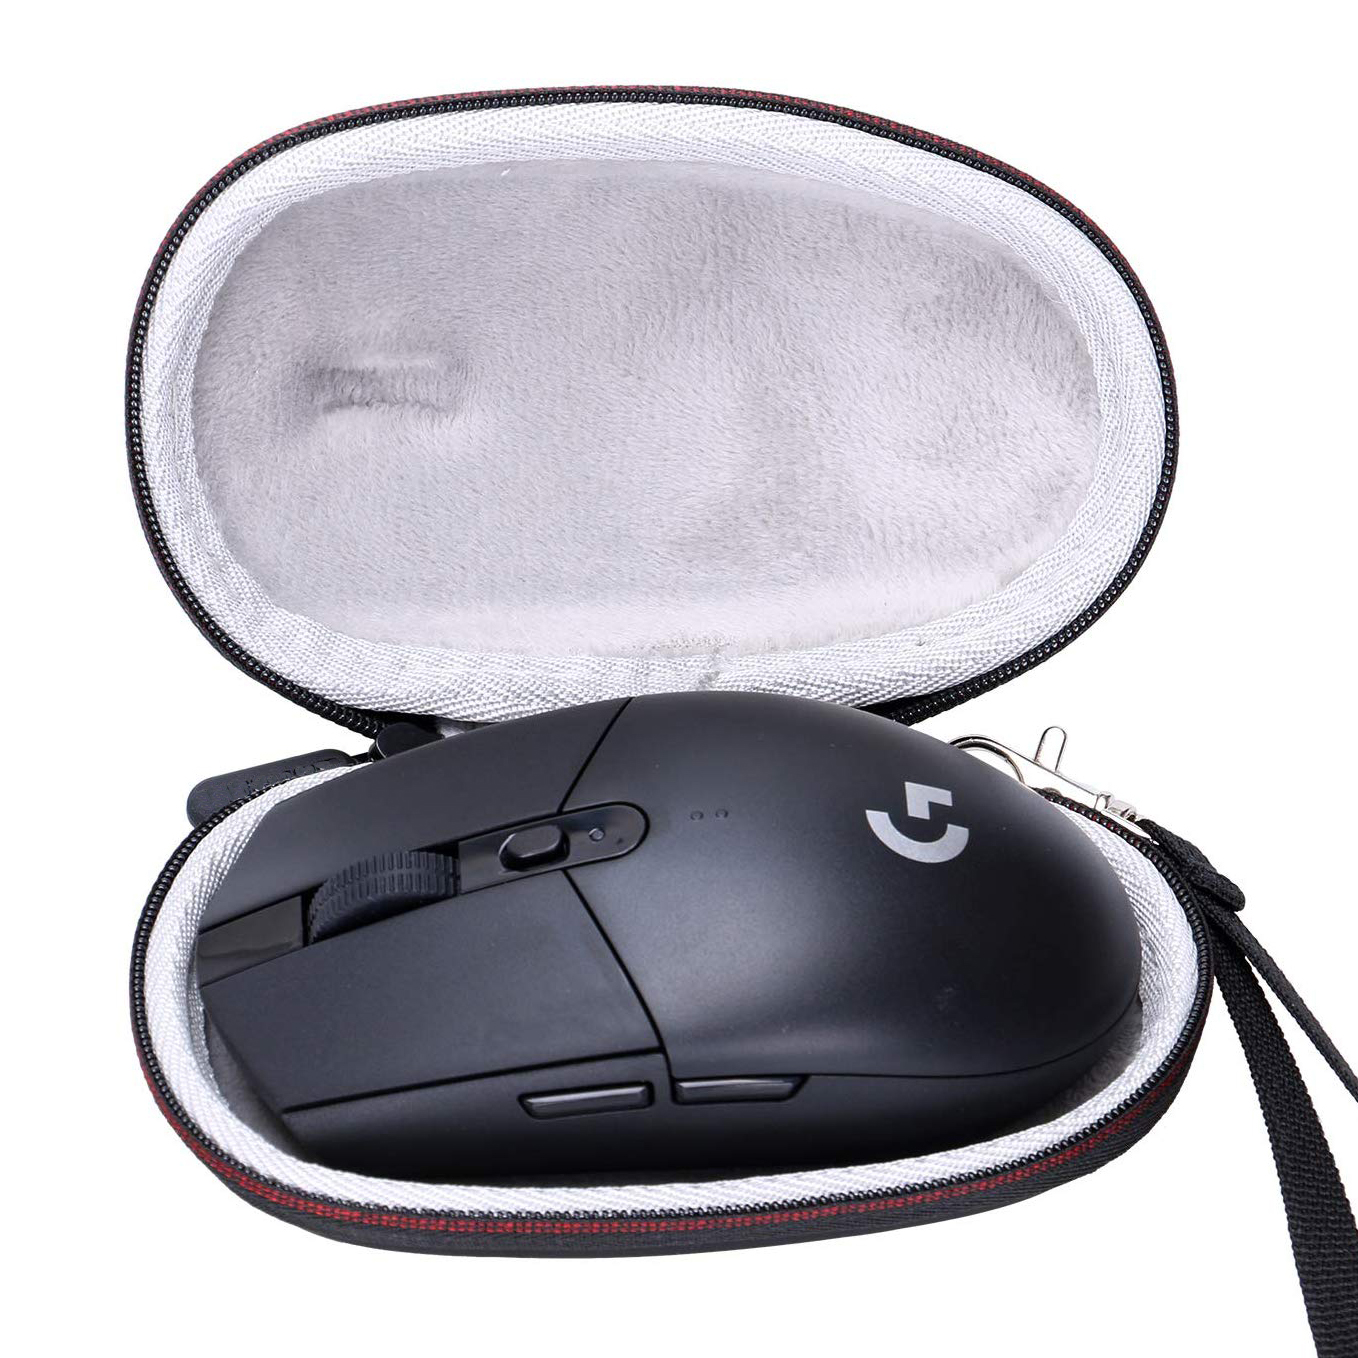 هول سيل Thermoformed Eva Hard Travel Mouse Case For Carrying Game Computer Mouse